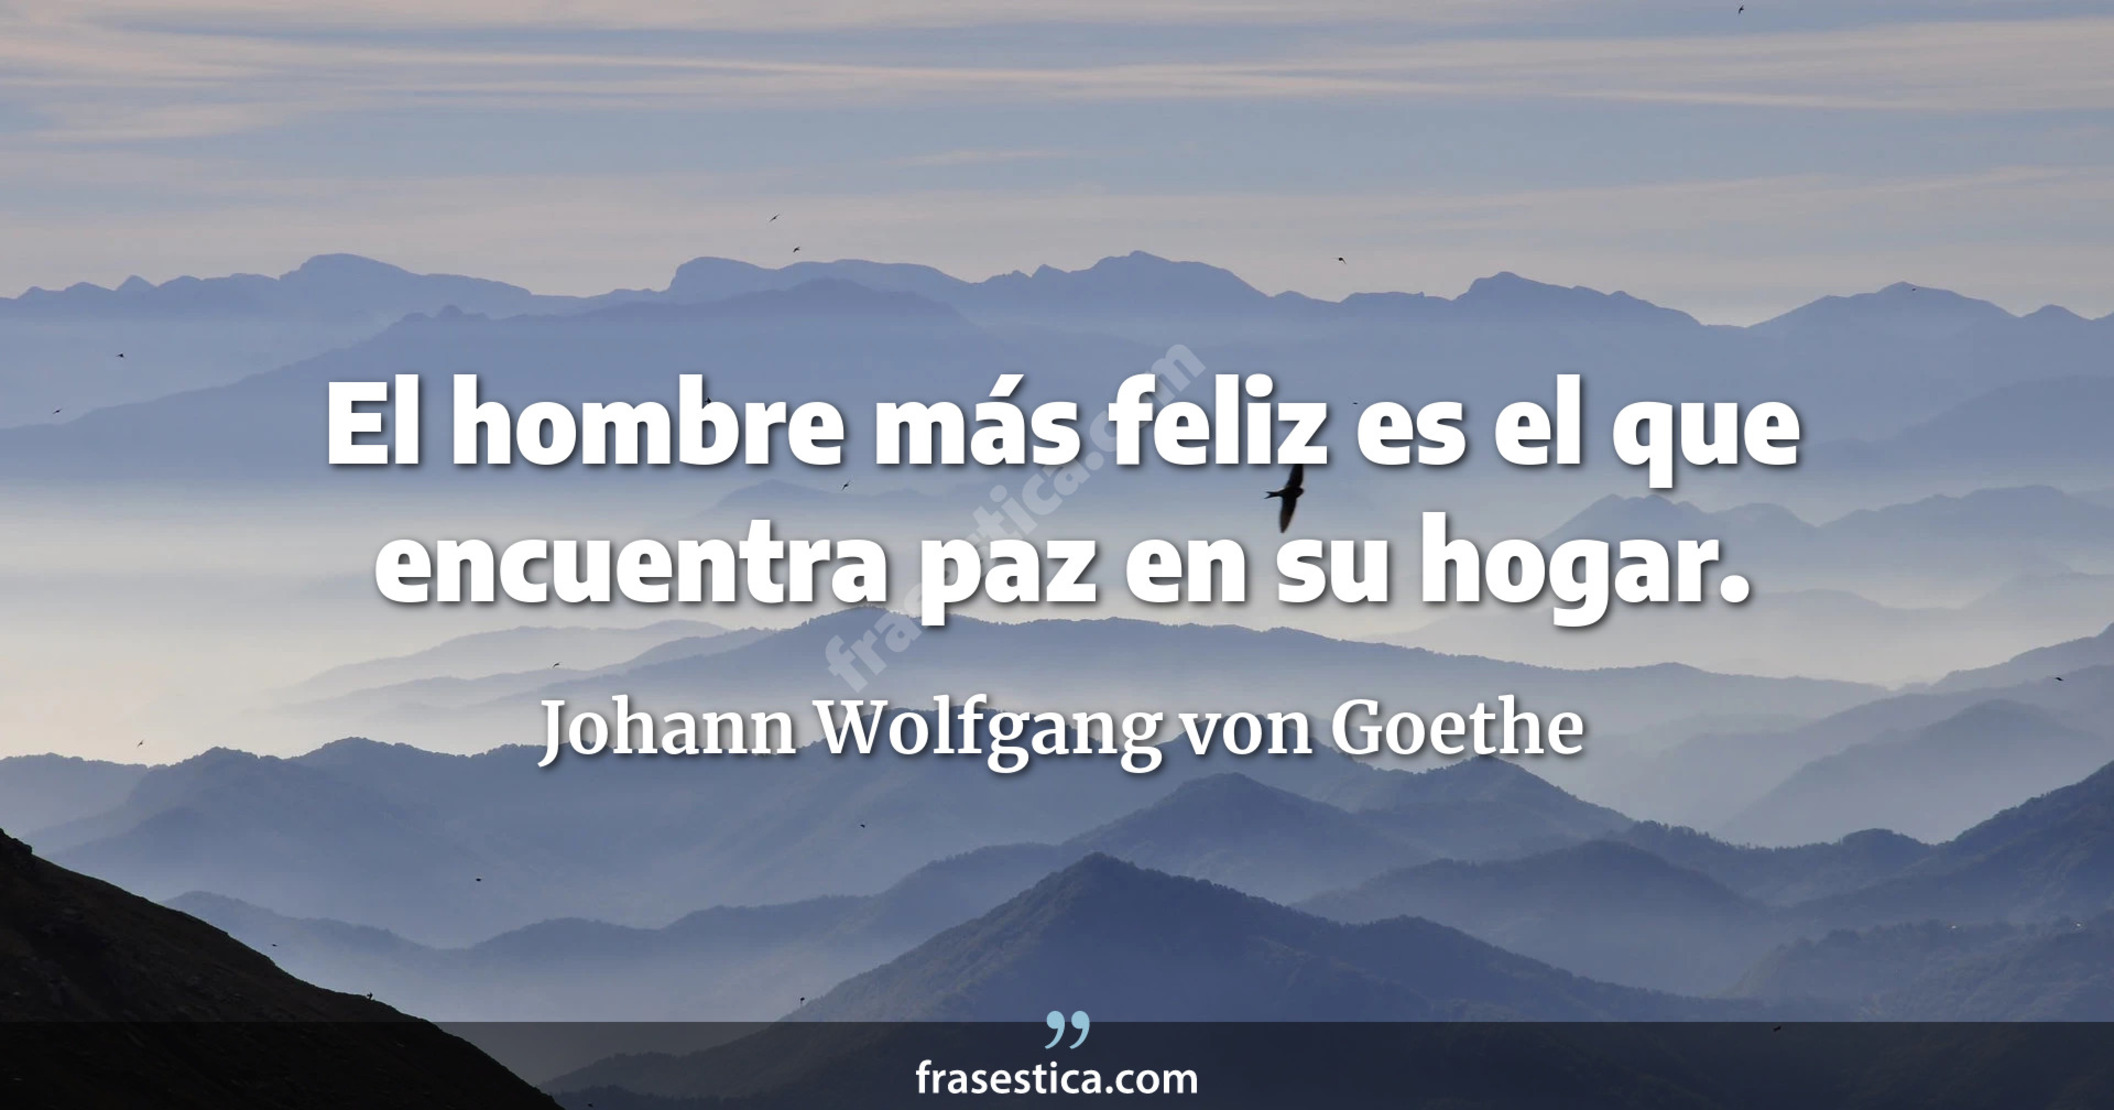 El hombre más feliz es el que encuentra paz en su hogar. - Johann Wolfgang von Goethe